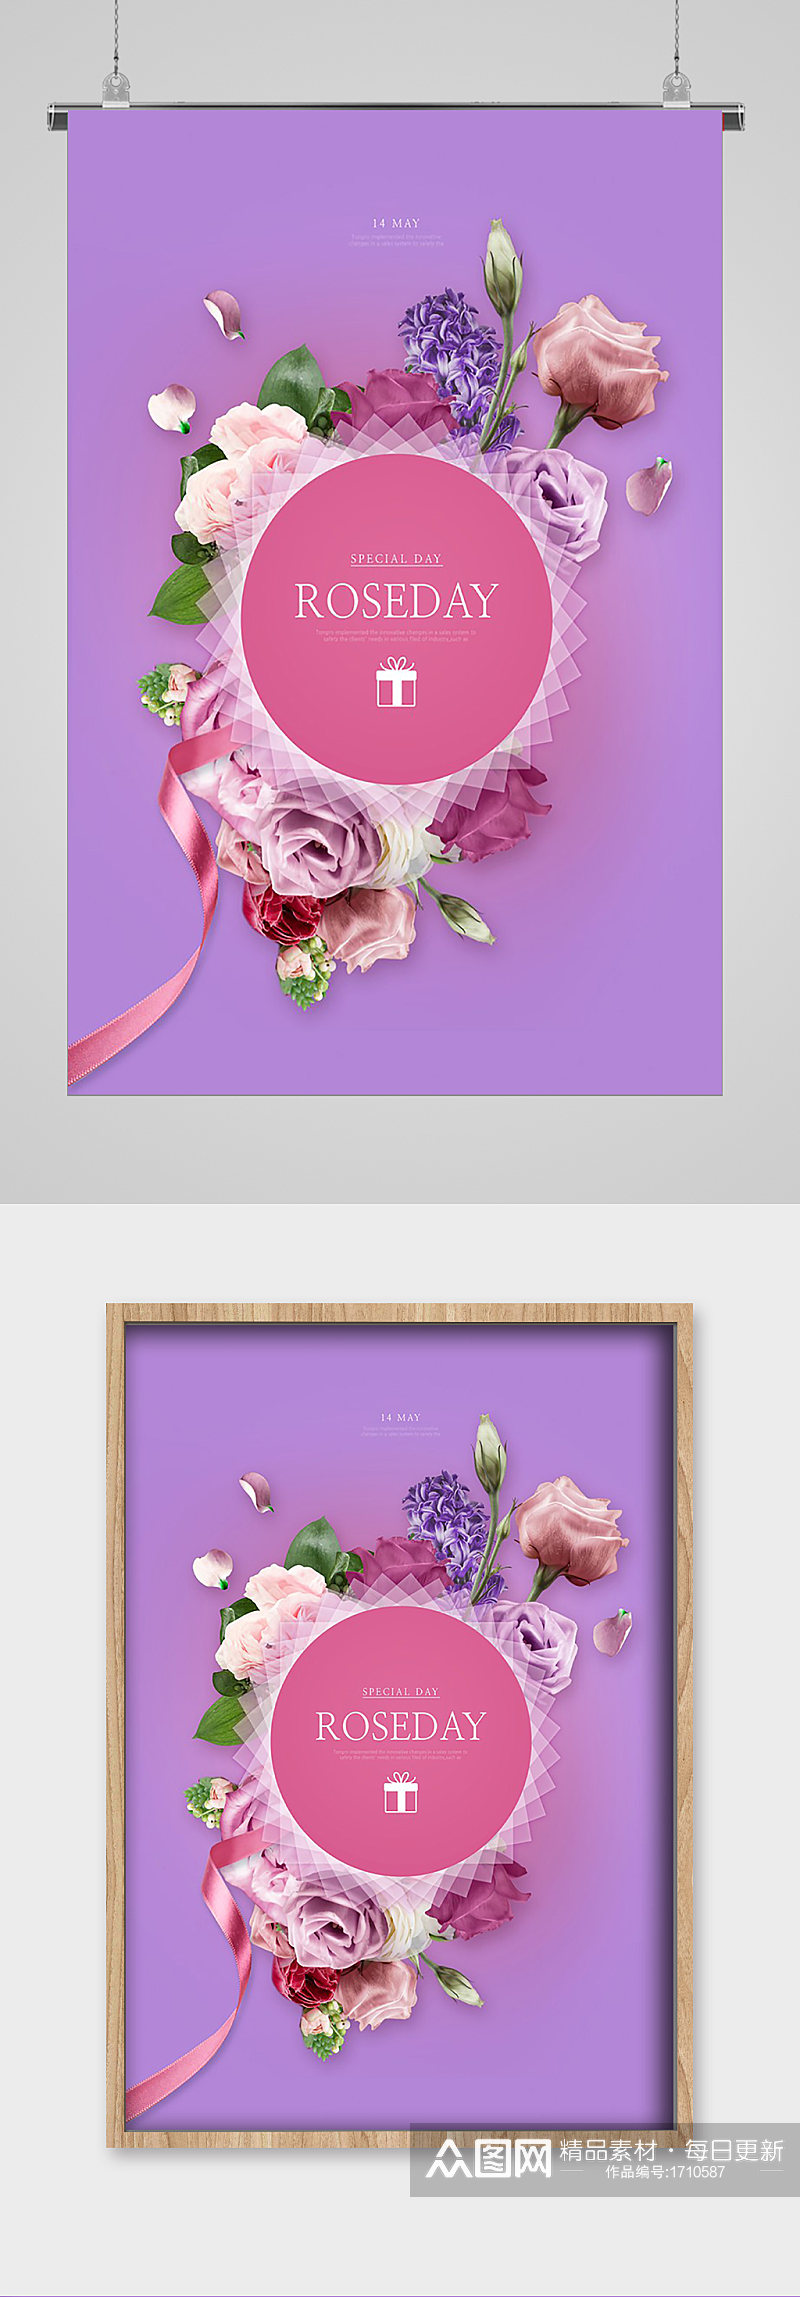 紫色背景玫瑰祝福宣传海报素材